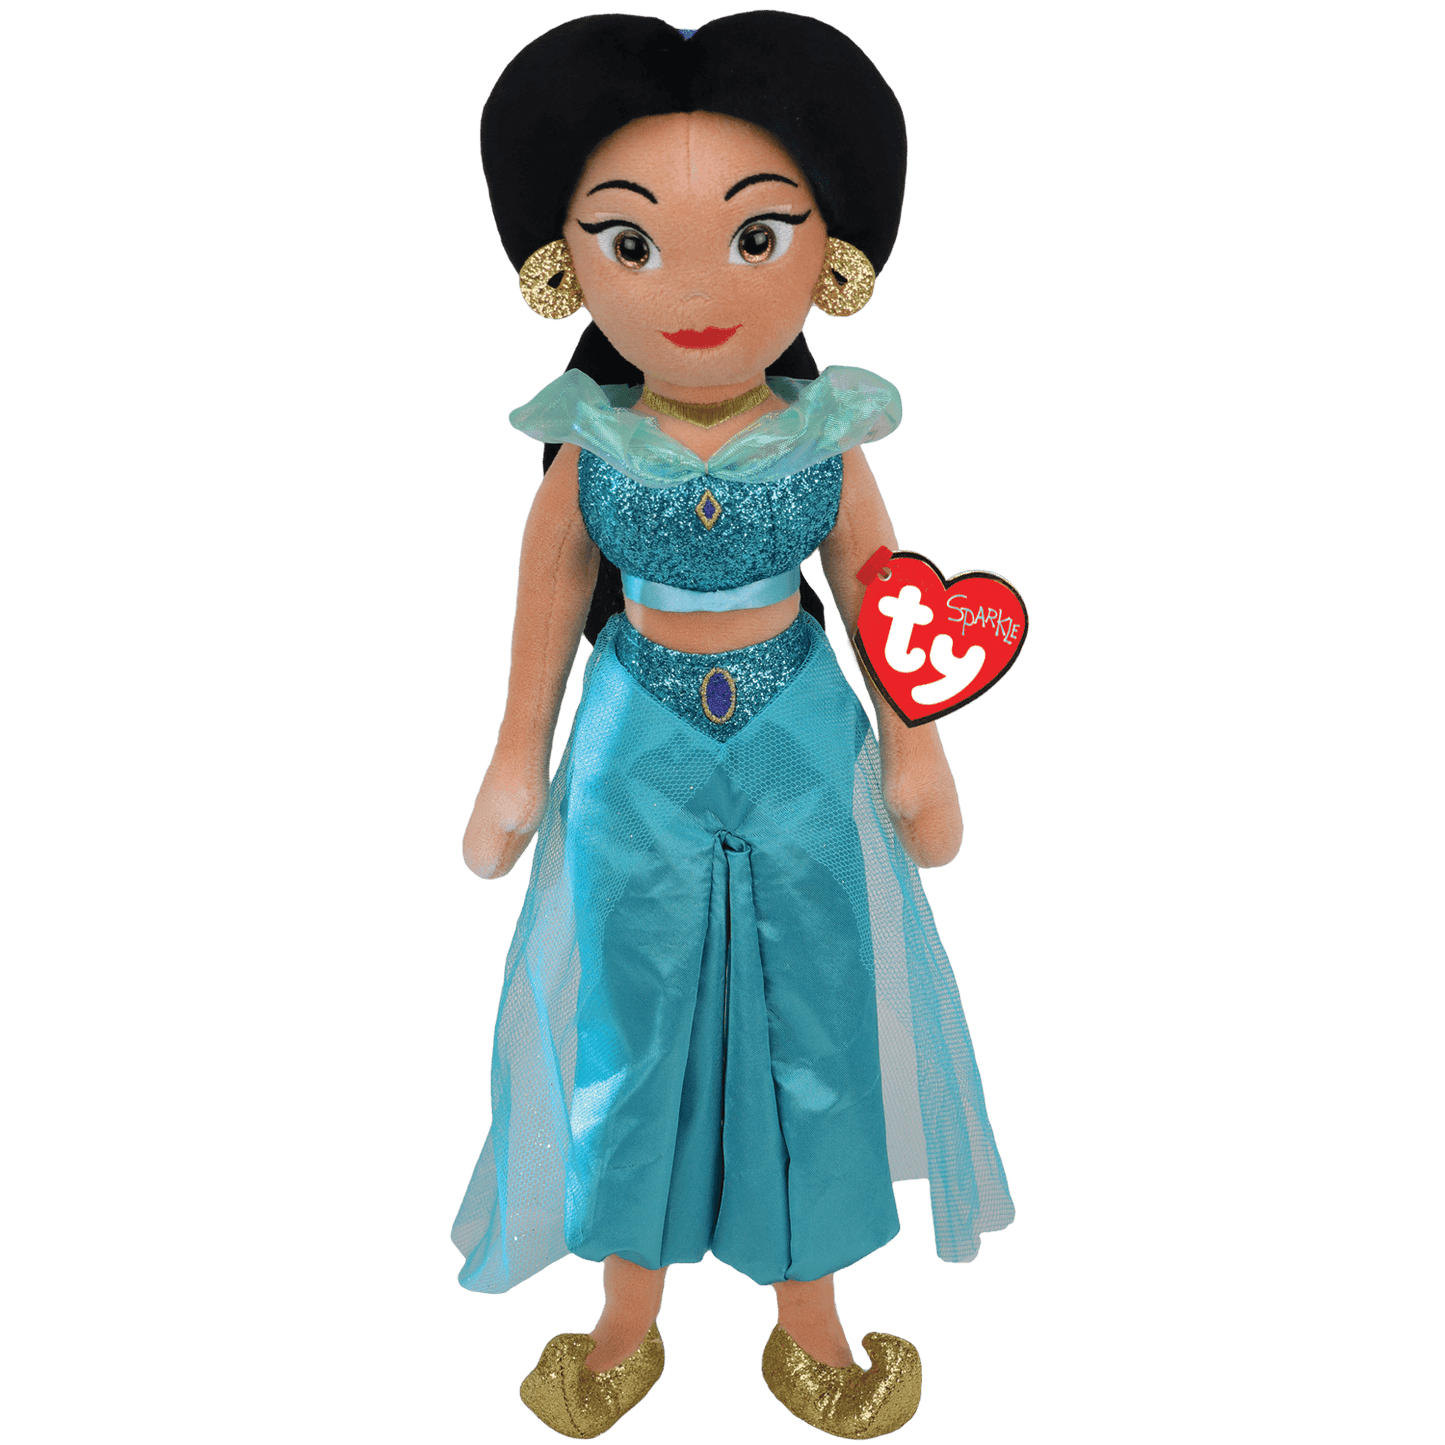 Ty Disney Princess Jasmine Aladdin Plush